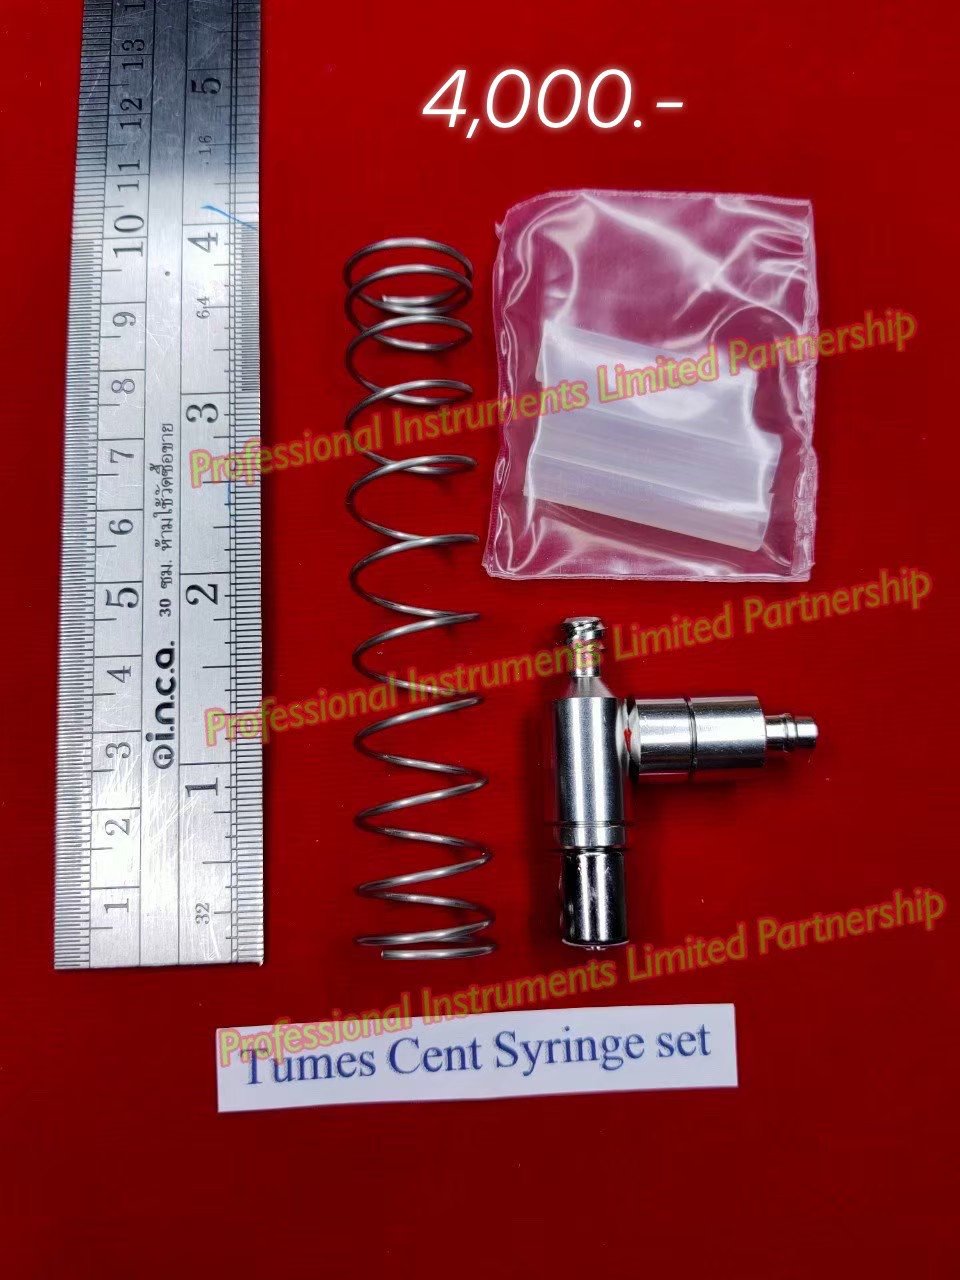 Tumes Cent Syringe Set